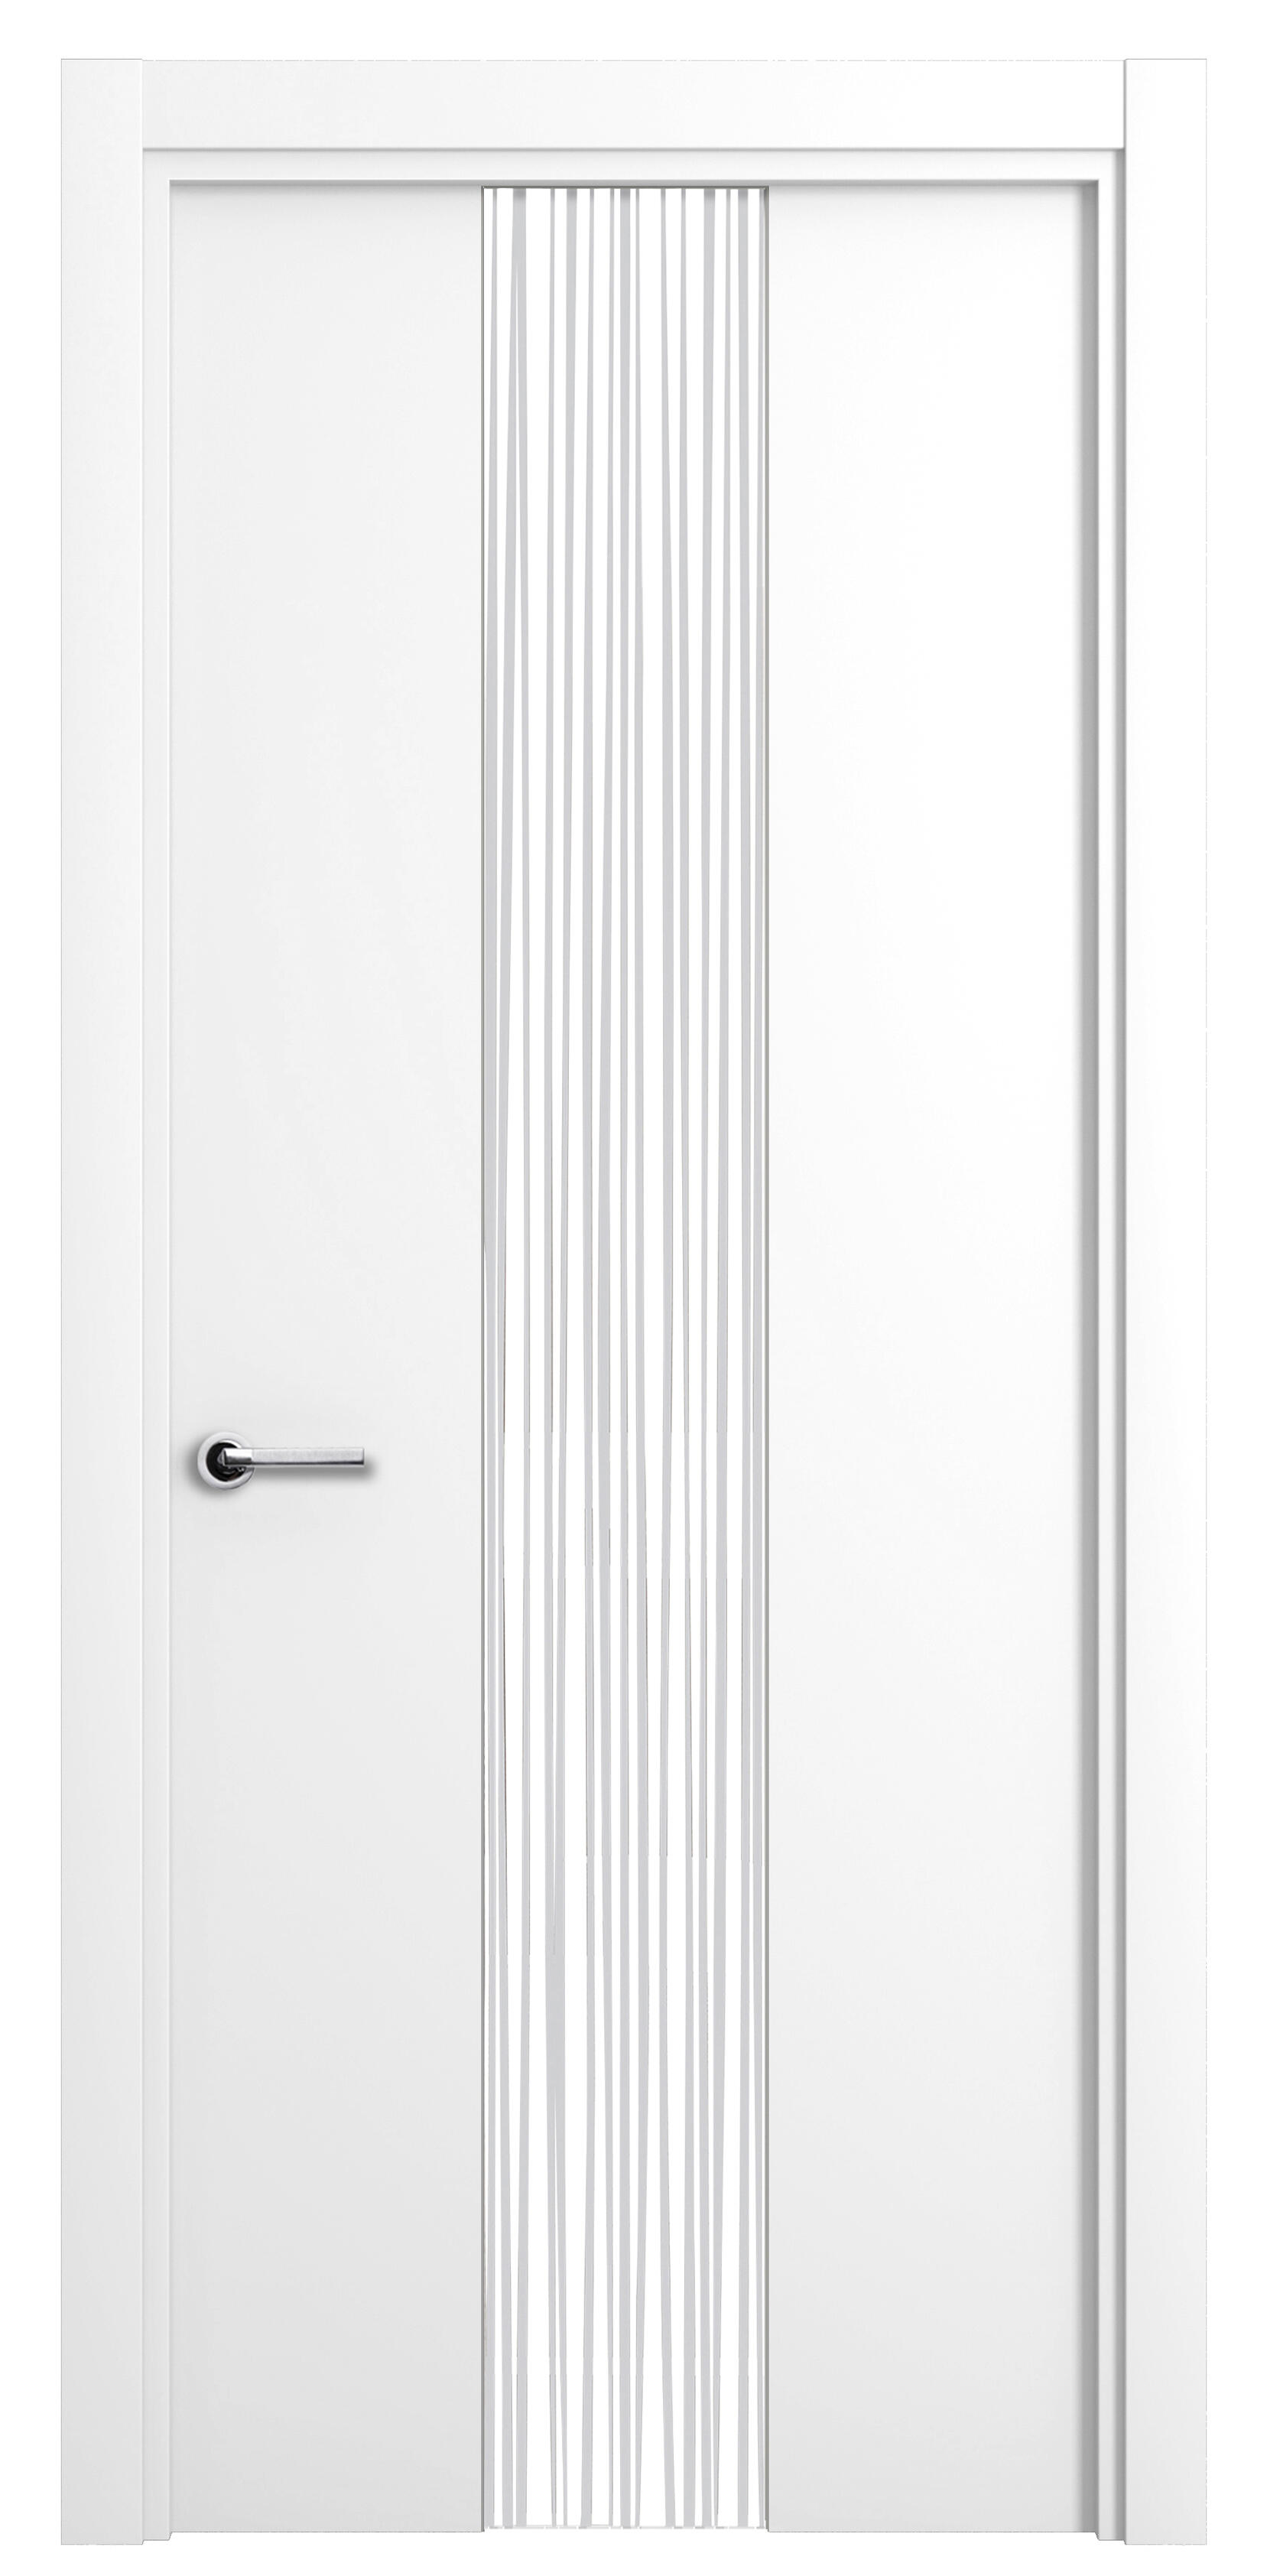 Puerta quevedo premium blanco apertura derecha con cristal 9x72.5cm